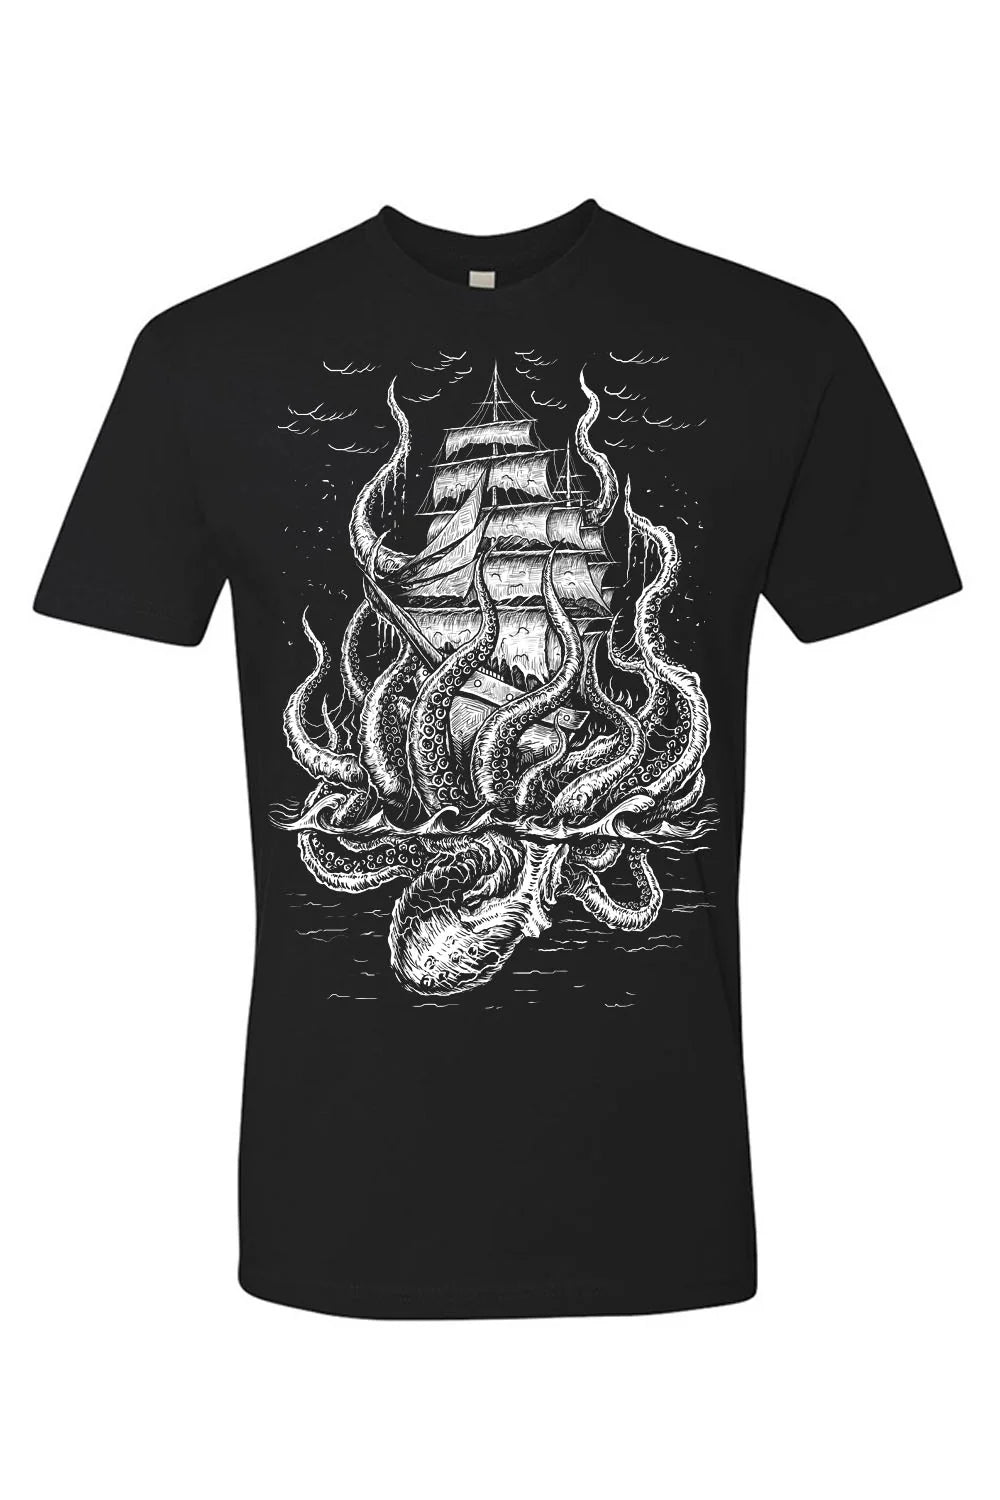 T-Shirt Release The Kraken